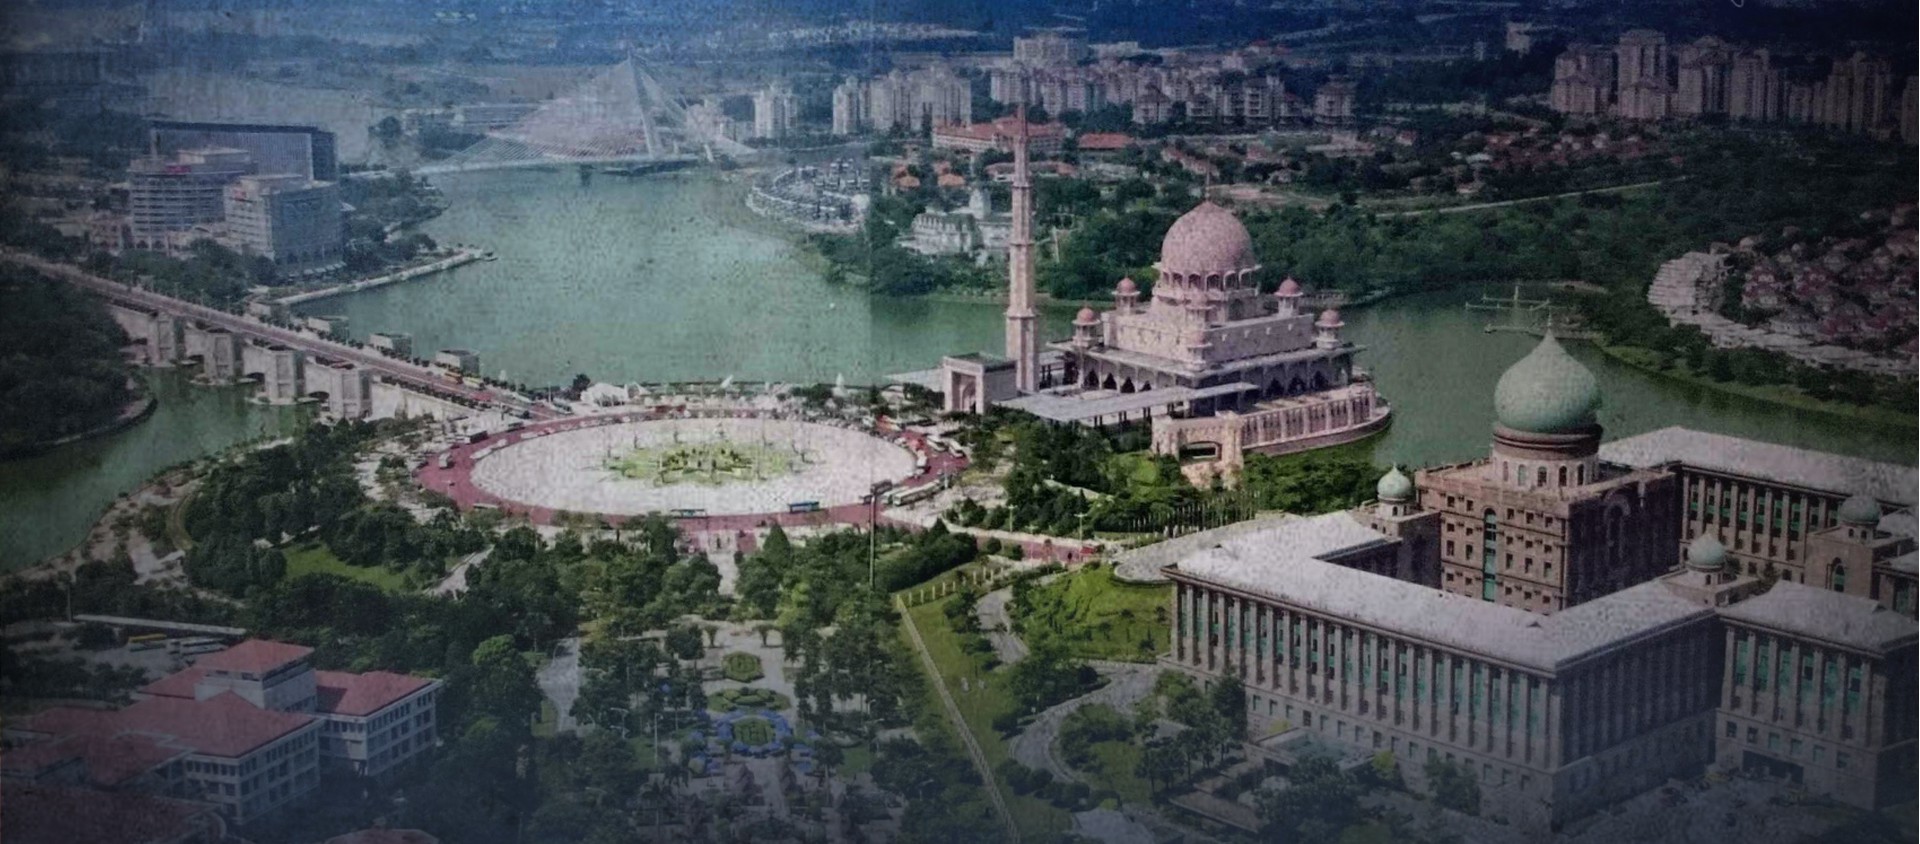 Khu đô thị mới Putrajaya - dấu ấn của Thủ tướng Mahathir - Ảnh 3.